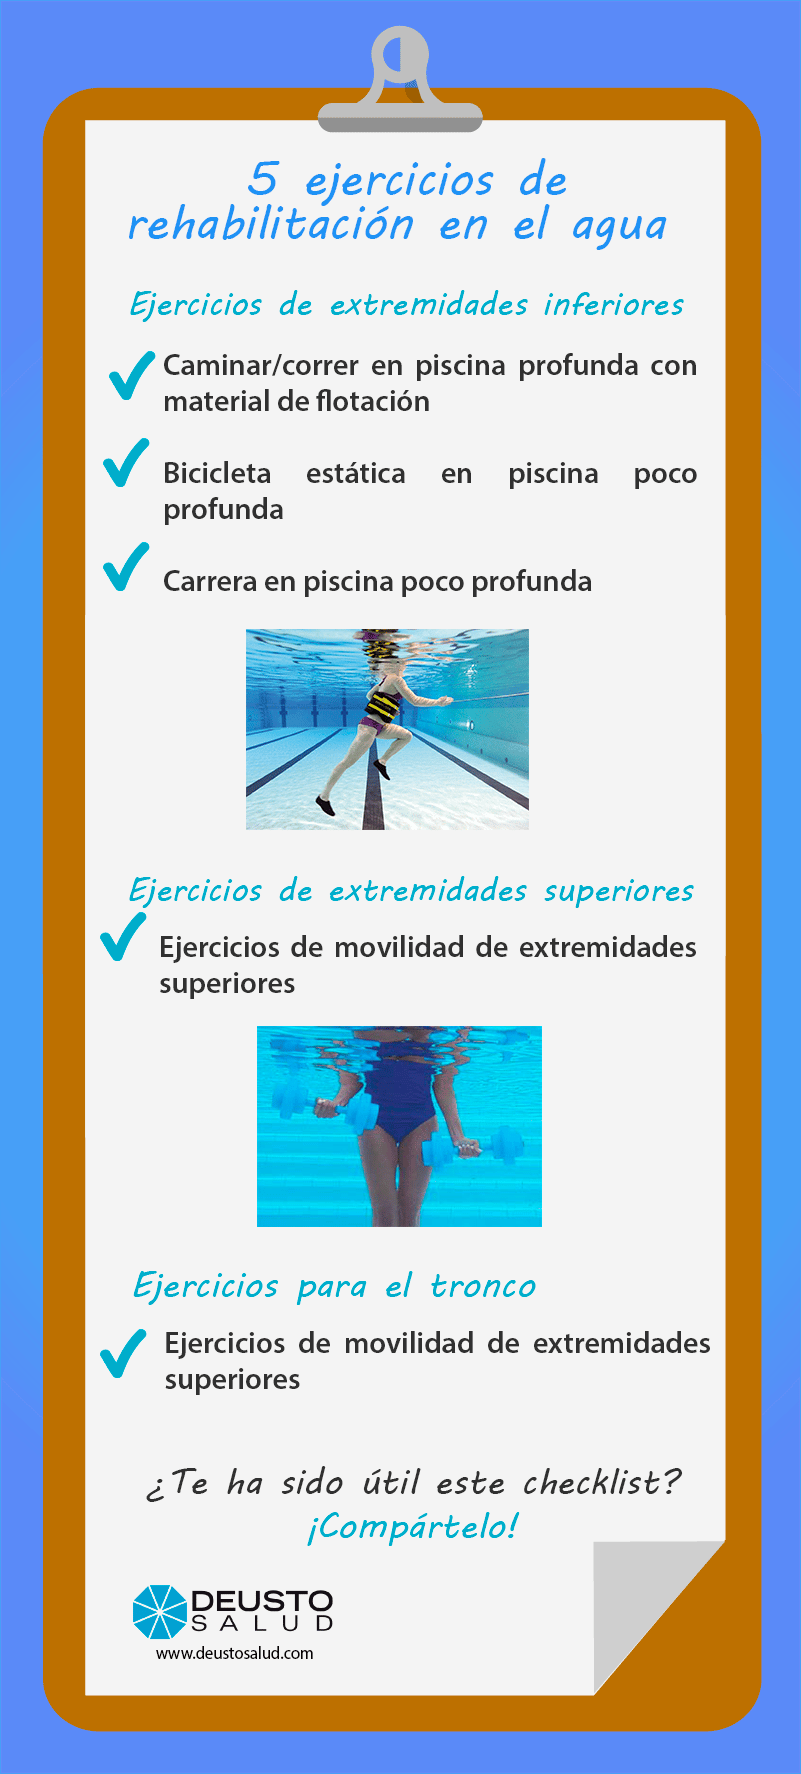 5 ejercicios de rehabilitación en el agua